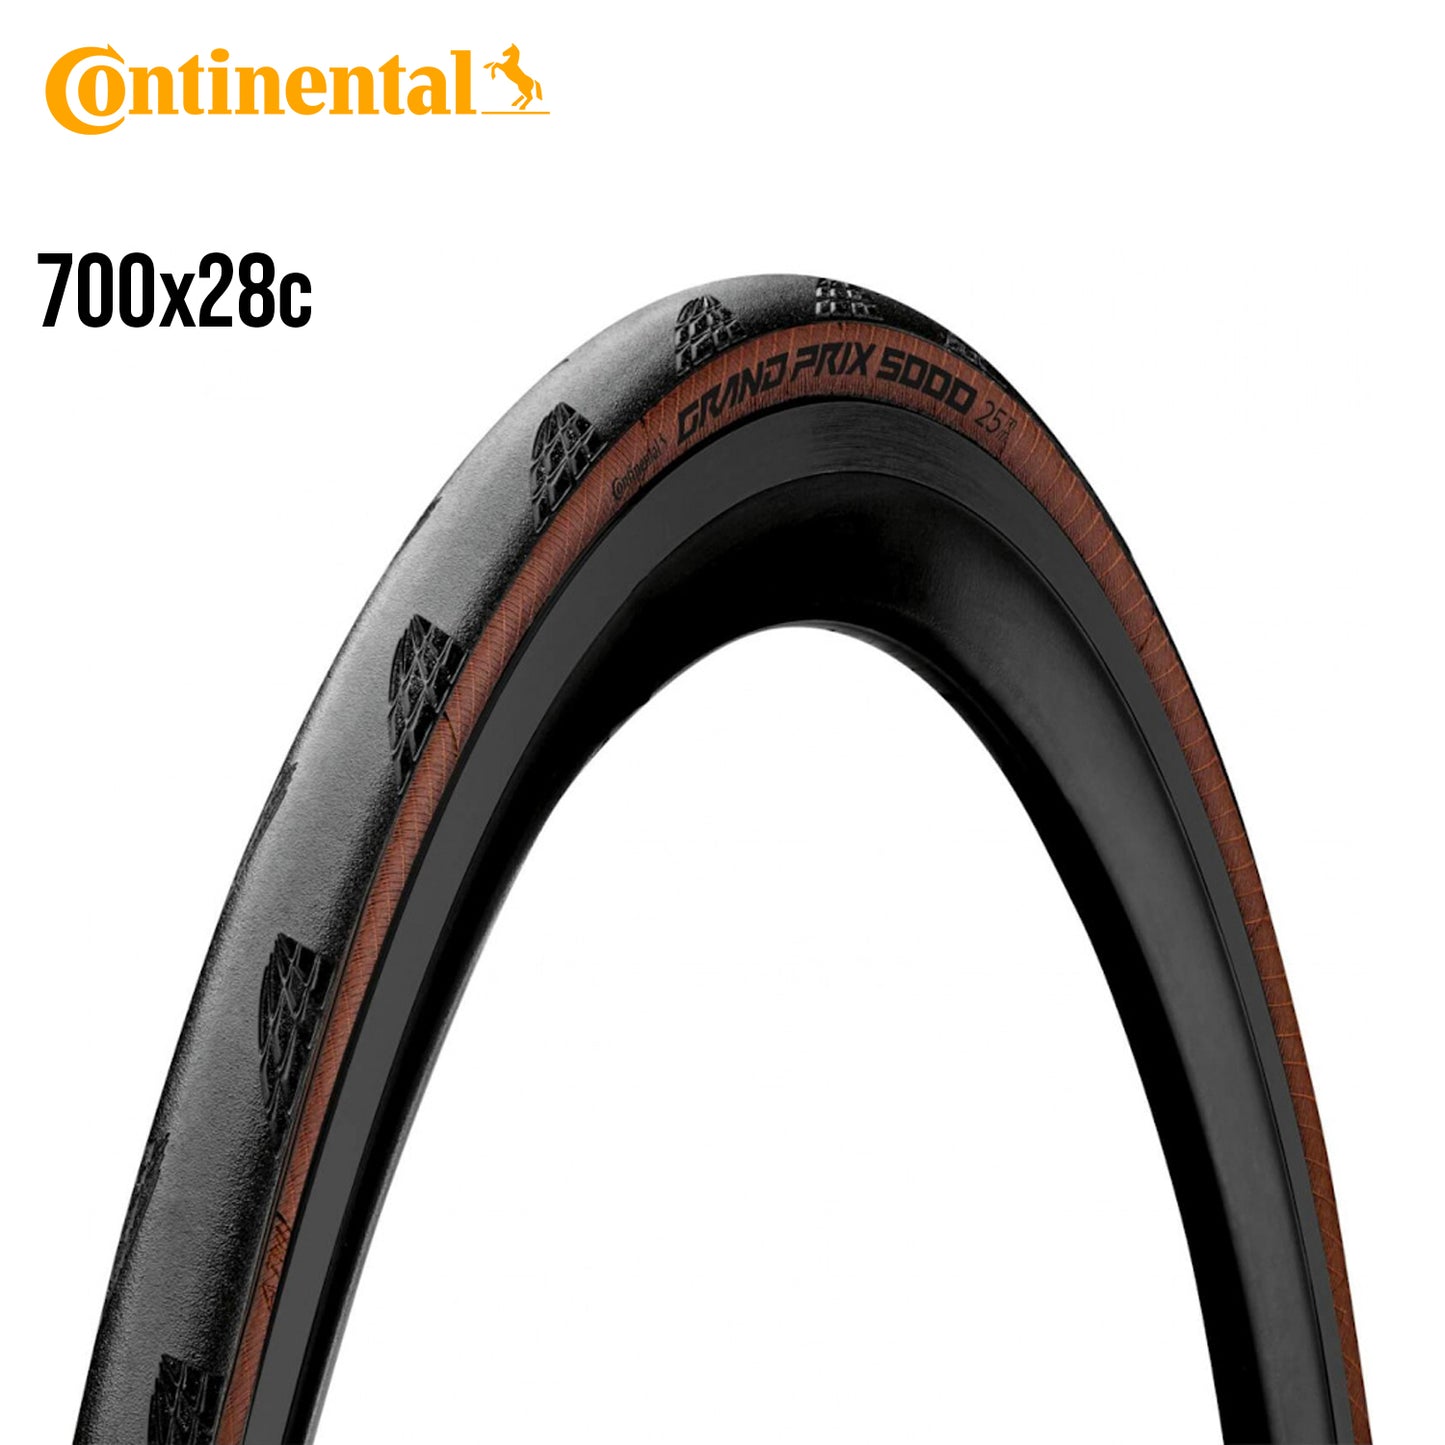 Continental Grand Prix 5000 (GP5000) Road Bike Tire Black Chili - Tan Wall